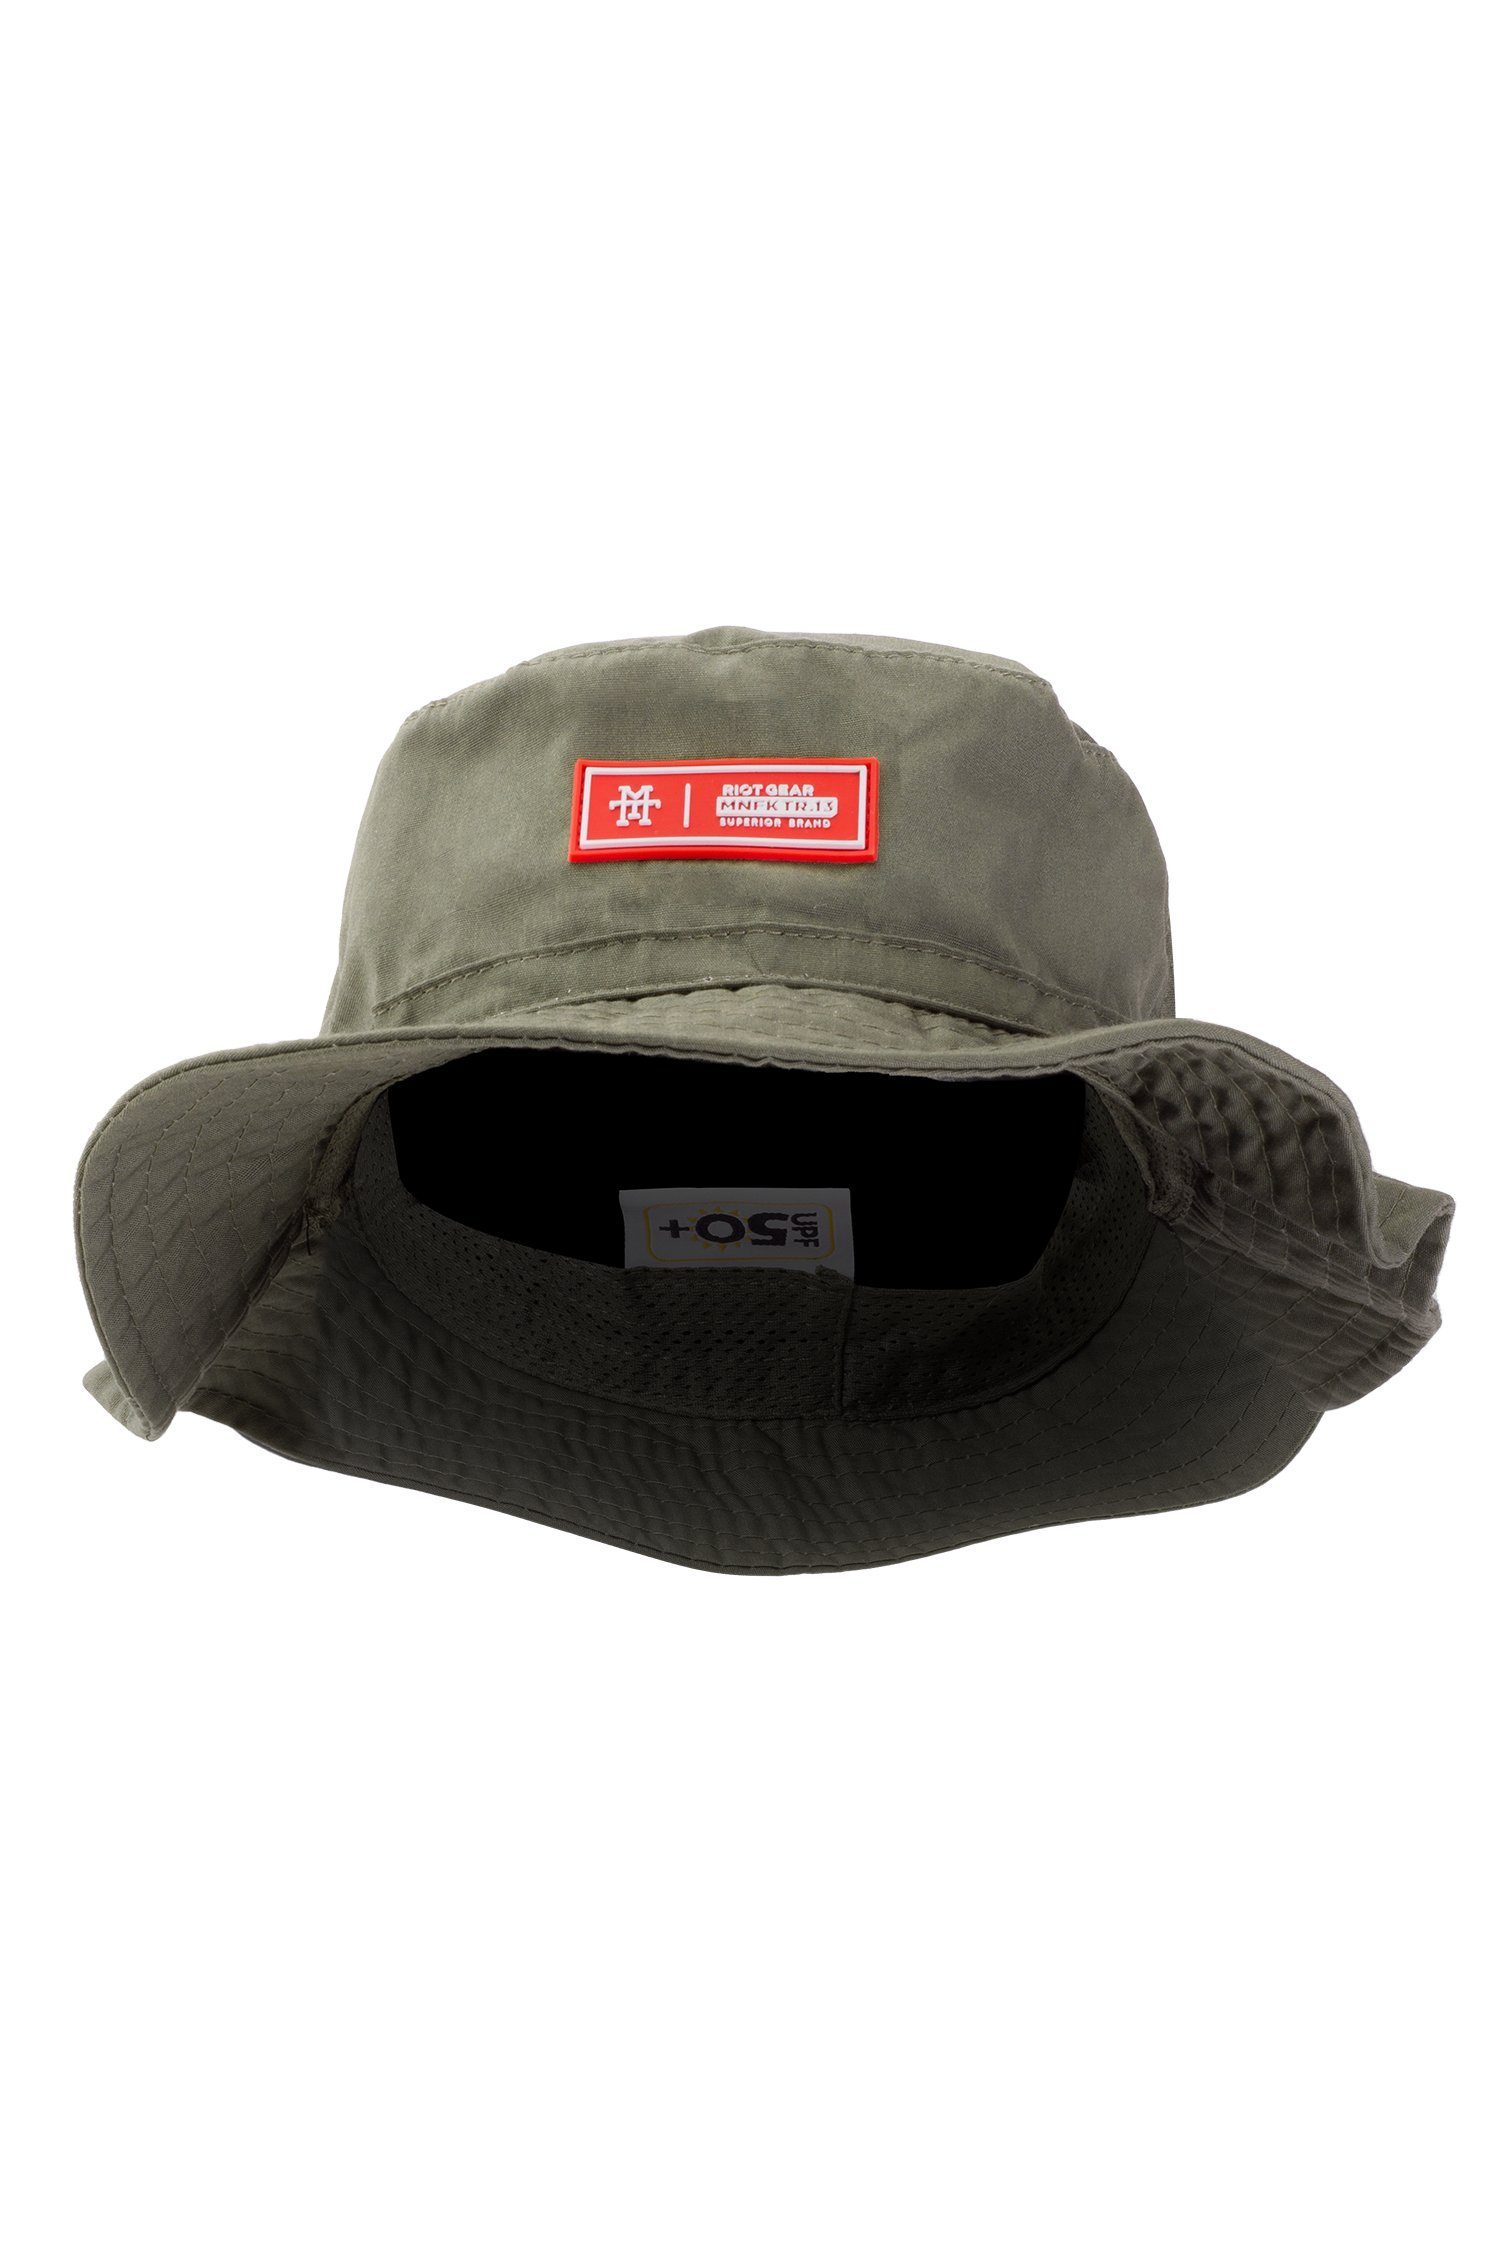 Manufaktur13 Sonnenhut Boonie Hat (Riot Gear) - Sonnenhut, Bucket Hat, Fischer Hut, Anglerhut mit UV-Schutzfaktor 50+ | Sonnenhüte